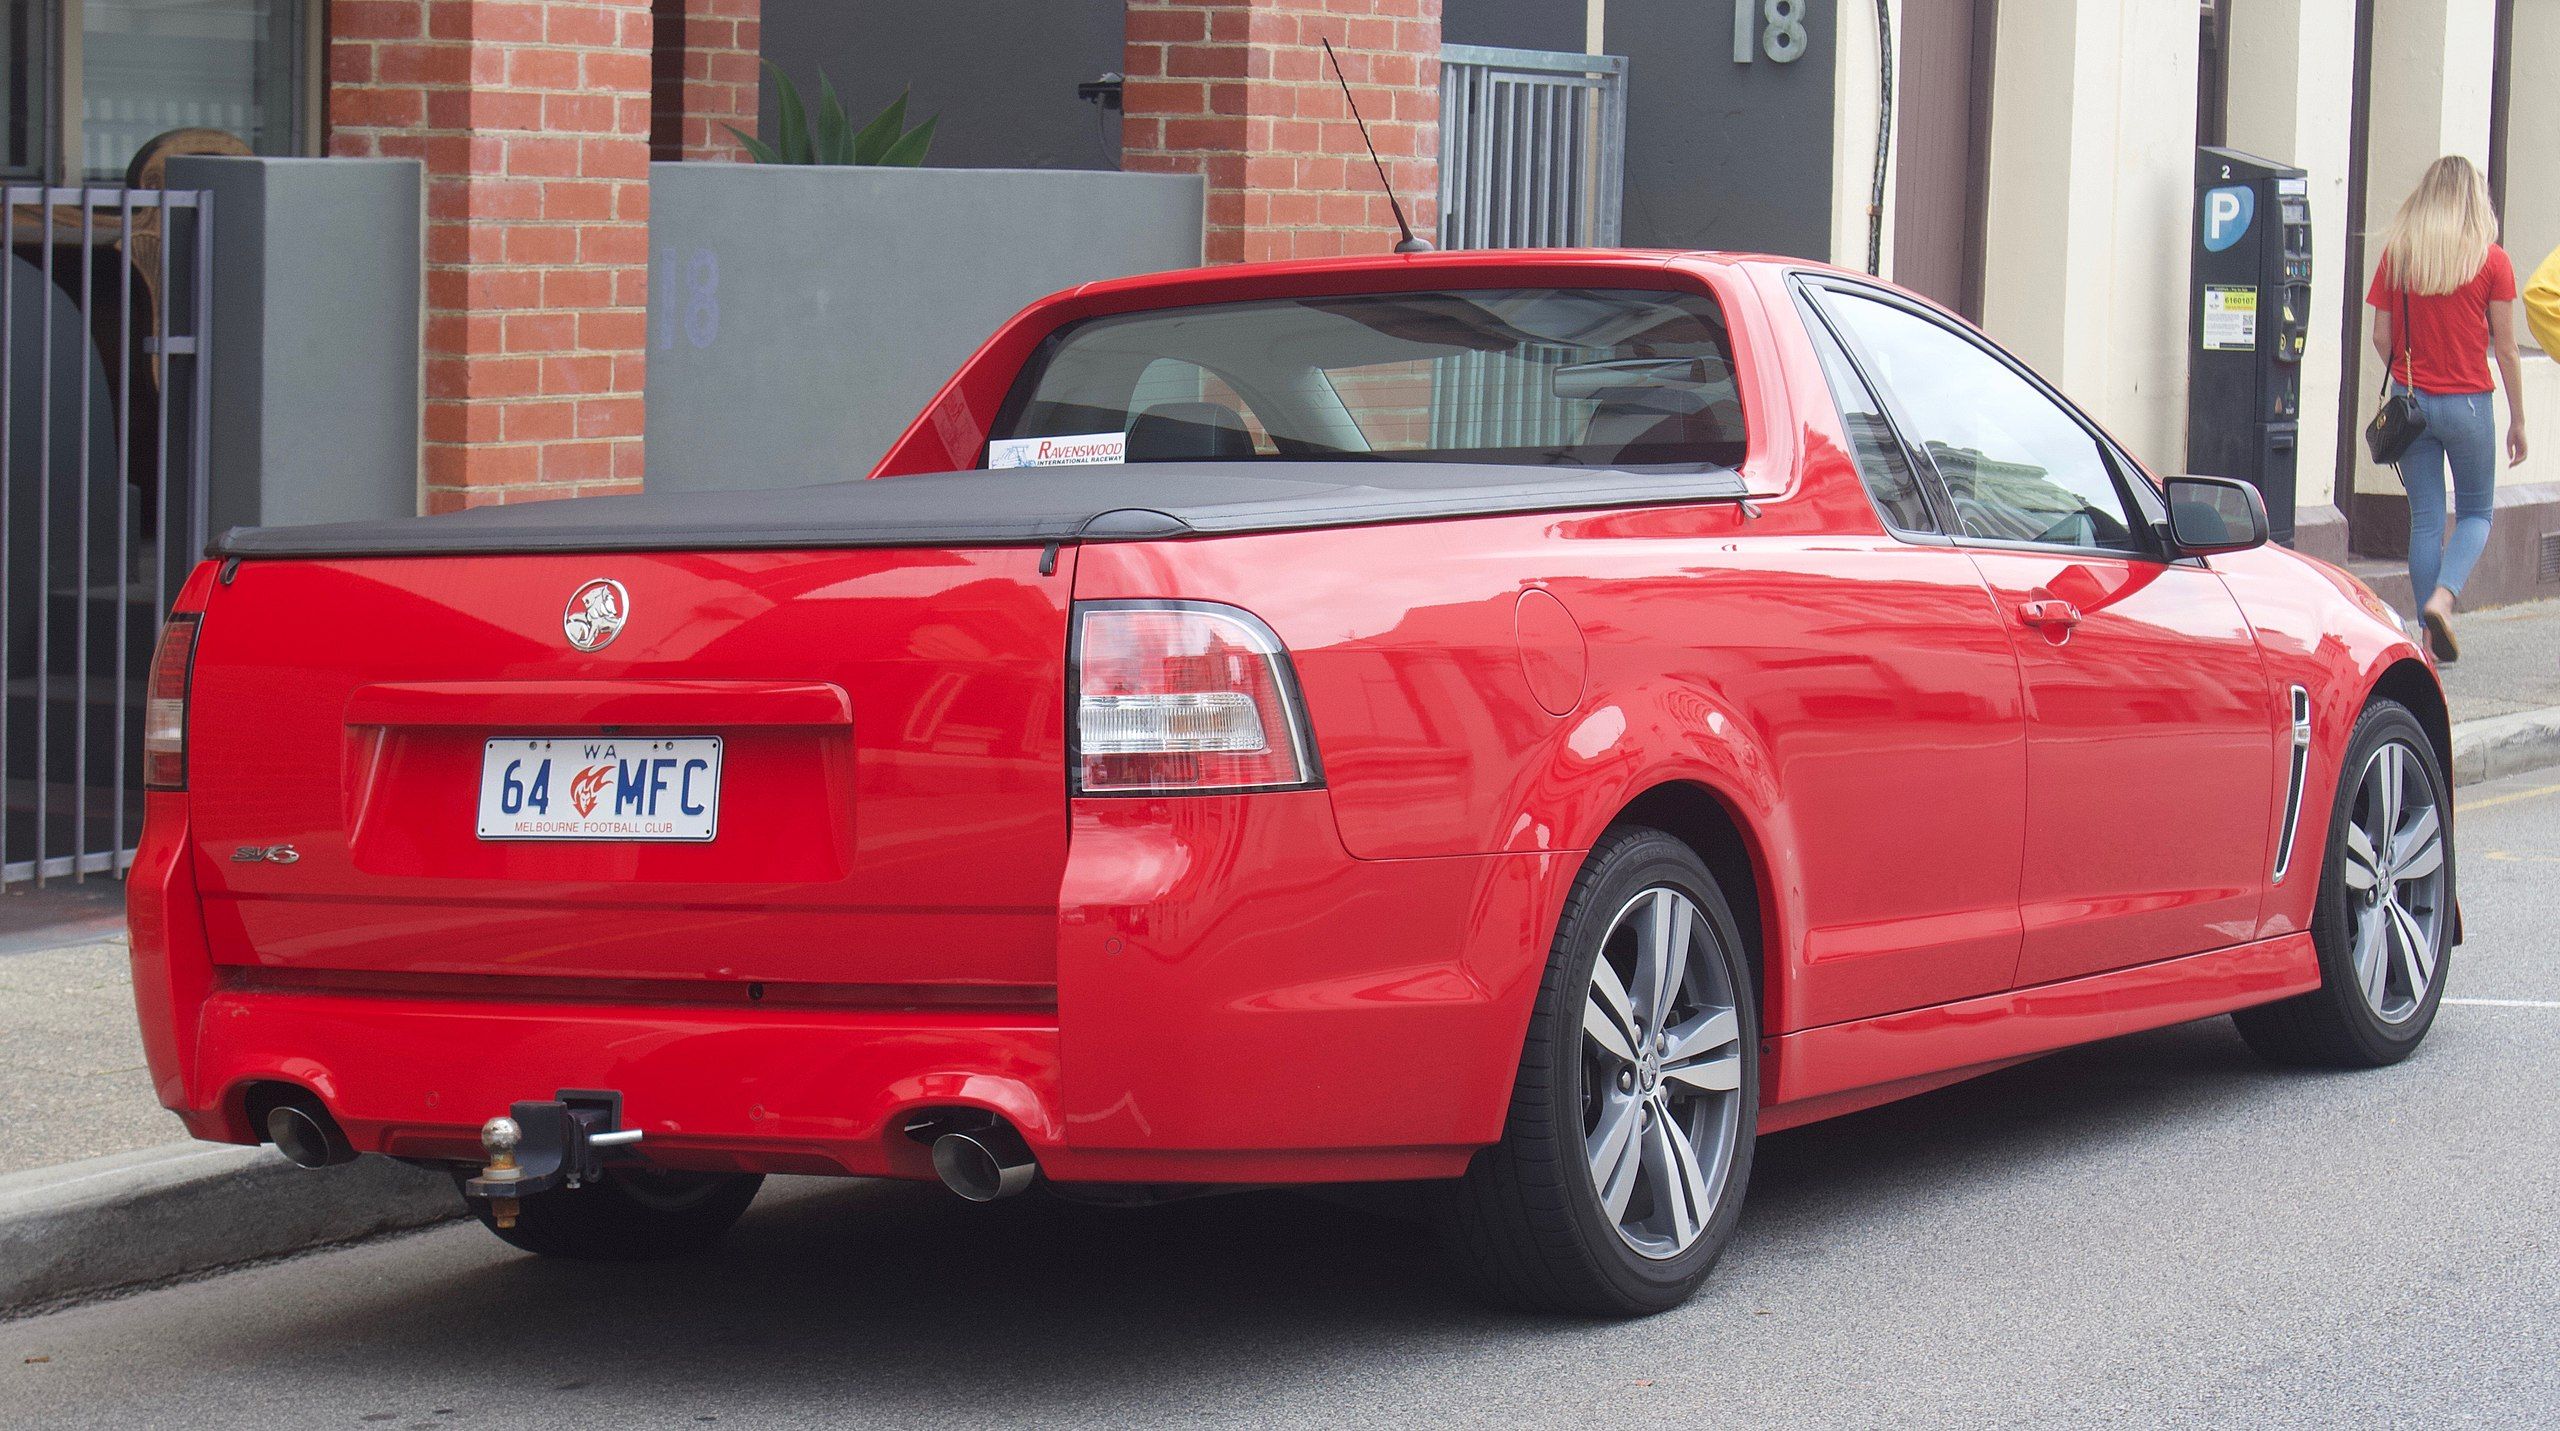 Holden UTE SV6 in Red